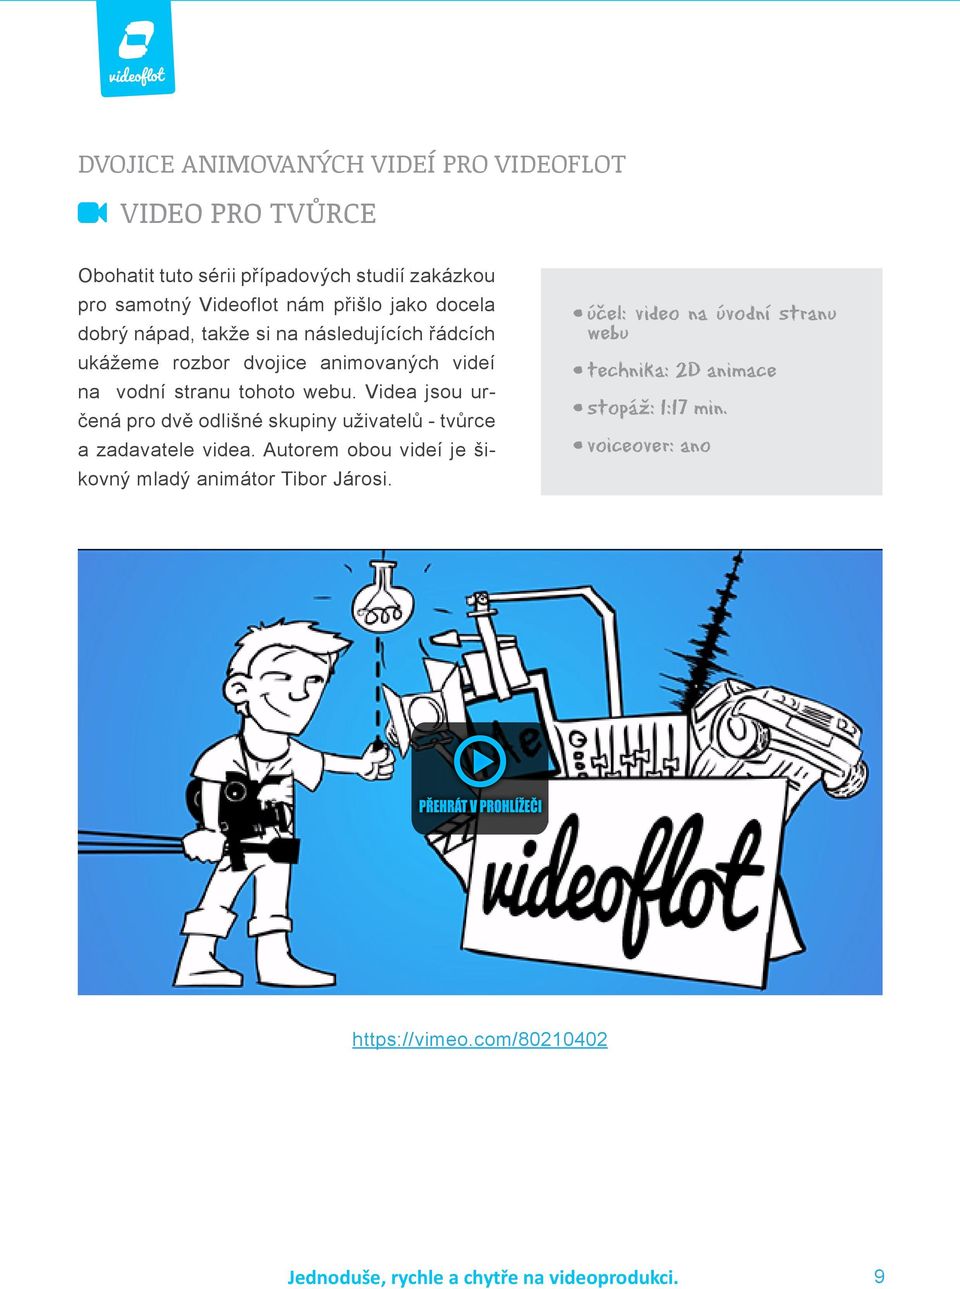 Videa jsou určená pro dvě odlišné skupiny uživatelů - tvůrce a zadavatele videa. Autorem obou videí je šikovný mladý animátor Tibor Járosi.